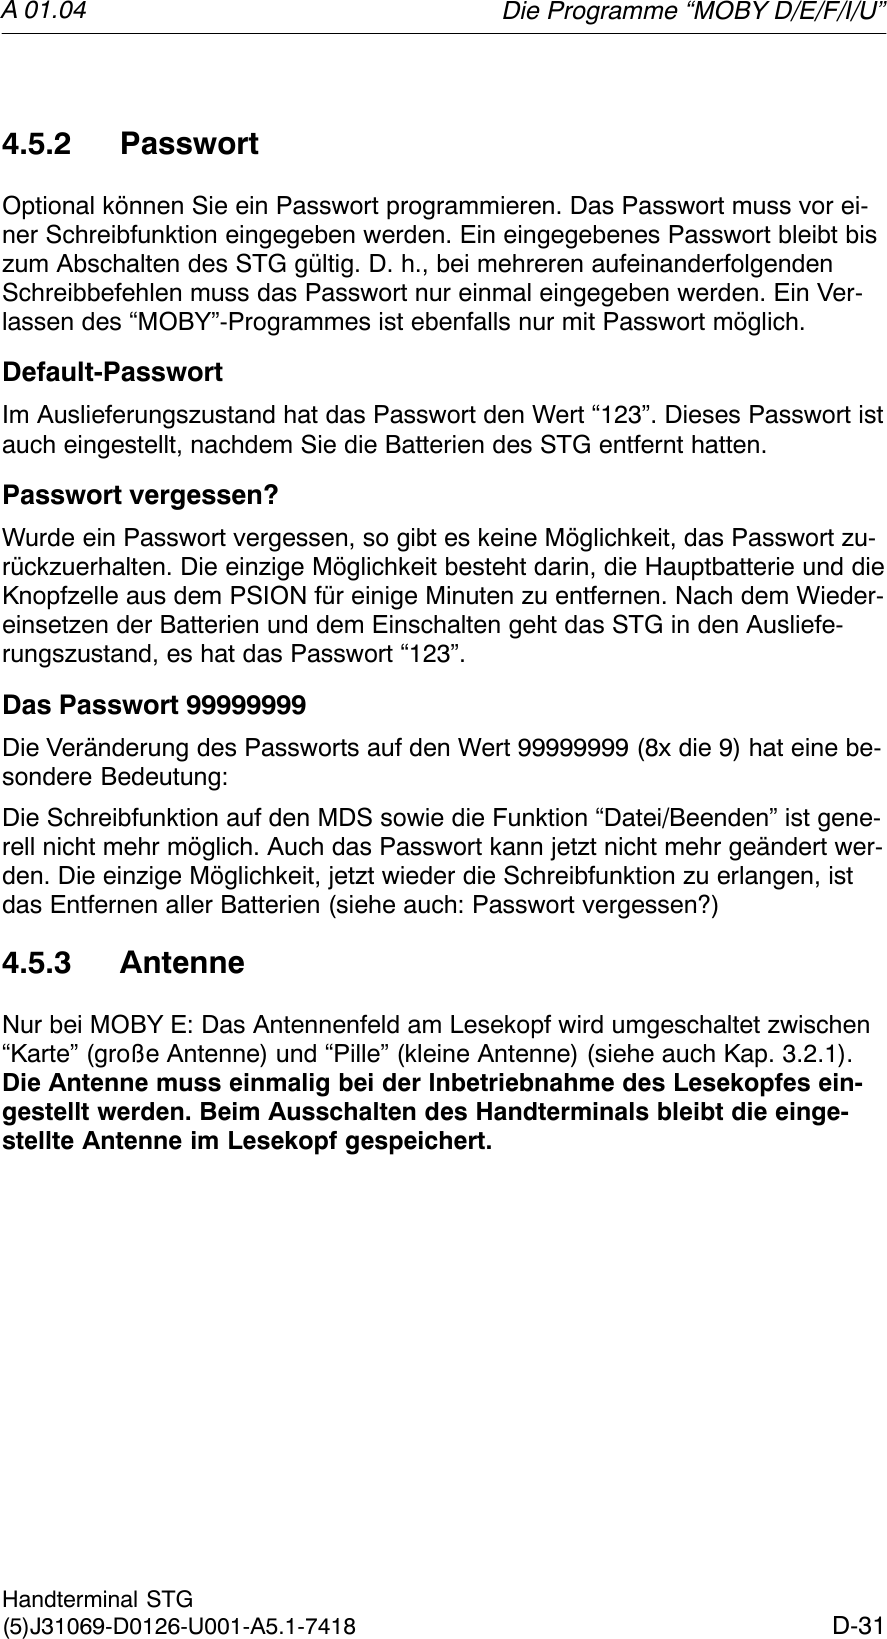 A 01.04D-31Handterminal STG(5)J31069-D0126-U001-A5.1-74184.5.2 PasswortOptional können Sie ein Passwort programmieren. Das Passwort muss vor ei-ner Schreibfunktion eingegeben werden. Ein eingegebenes Passwort bleibt biszum Abschalten des STG gültig. D. h., bei mehreren aufeinanderfolgendenSchreibbefehlen muss das Passwort nur einmal eingegeben werden. Ein Ver-lassen des “MOBY”-Programmes ist ebenfalls nur mit Passwort möglich.Default-PasswortIm Auslieferungszustand hat das Passwort den Wert “123”. Dieses Passwort istauch eingestellt, nachdem Sie die Batterien des STG entfernt hatten.Passwort vergessen?Wurde ein Passwort vergessen, so gibt es keine Möglichkeit, das Passwort zu-rückzuerhalten. Die einzige Möglichkeit besteht darin, die Hauptbatterie und dieKnopfzelle aus dem PSION für einige Minuten zu entfernen. Nach dem Wieder-einsetzen der Batterien und dem Einschalten geht das STG in den Ausliefe-rungszustand, es hat das Passwort “123”.Das Passwort 99999999Die Veränderung des Passworts auf den Wert 99999999 (8x die 9) hat eine be-sondere Bedeutung:Die Schreibfunktion auf den MDS sowie die Funktion “Datei/Beenden” ist gene-rell nicht mehr möglich. Auch das Passwort kann jetzt nicht mehr geändert wer-den. Die einzige Möglichkeit, jetzt wieder die Schreibfunktion zu erlangen, istdas Entfernen aller Batterien (siehe auch: Passwort vergessen?)4.5.3 AntenneNur bei MOBY E: Das Antennenfeld am Lesekopf wird umgeschaltet zwischen“Karte” (große Antenne) und “Pille” (kleine Antenne) (siehe auch Kap. 3.2.1).Die Antenne muss einmalig bei der Inbetriebnahme des Lesekopfes ein-gestellt werden. Beim Ausschalten des Handterminals bleibt die einge-stellte Antenne im Lesekopf gespeichert.Die Programme “MOBY D/E/F/I/U”